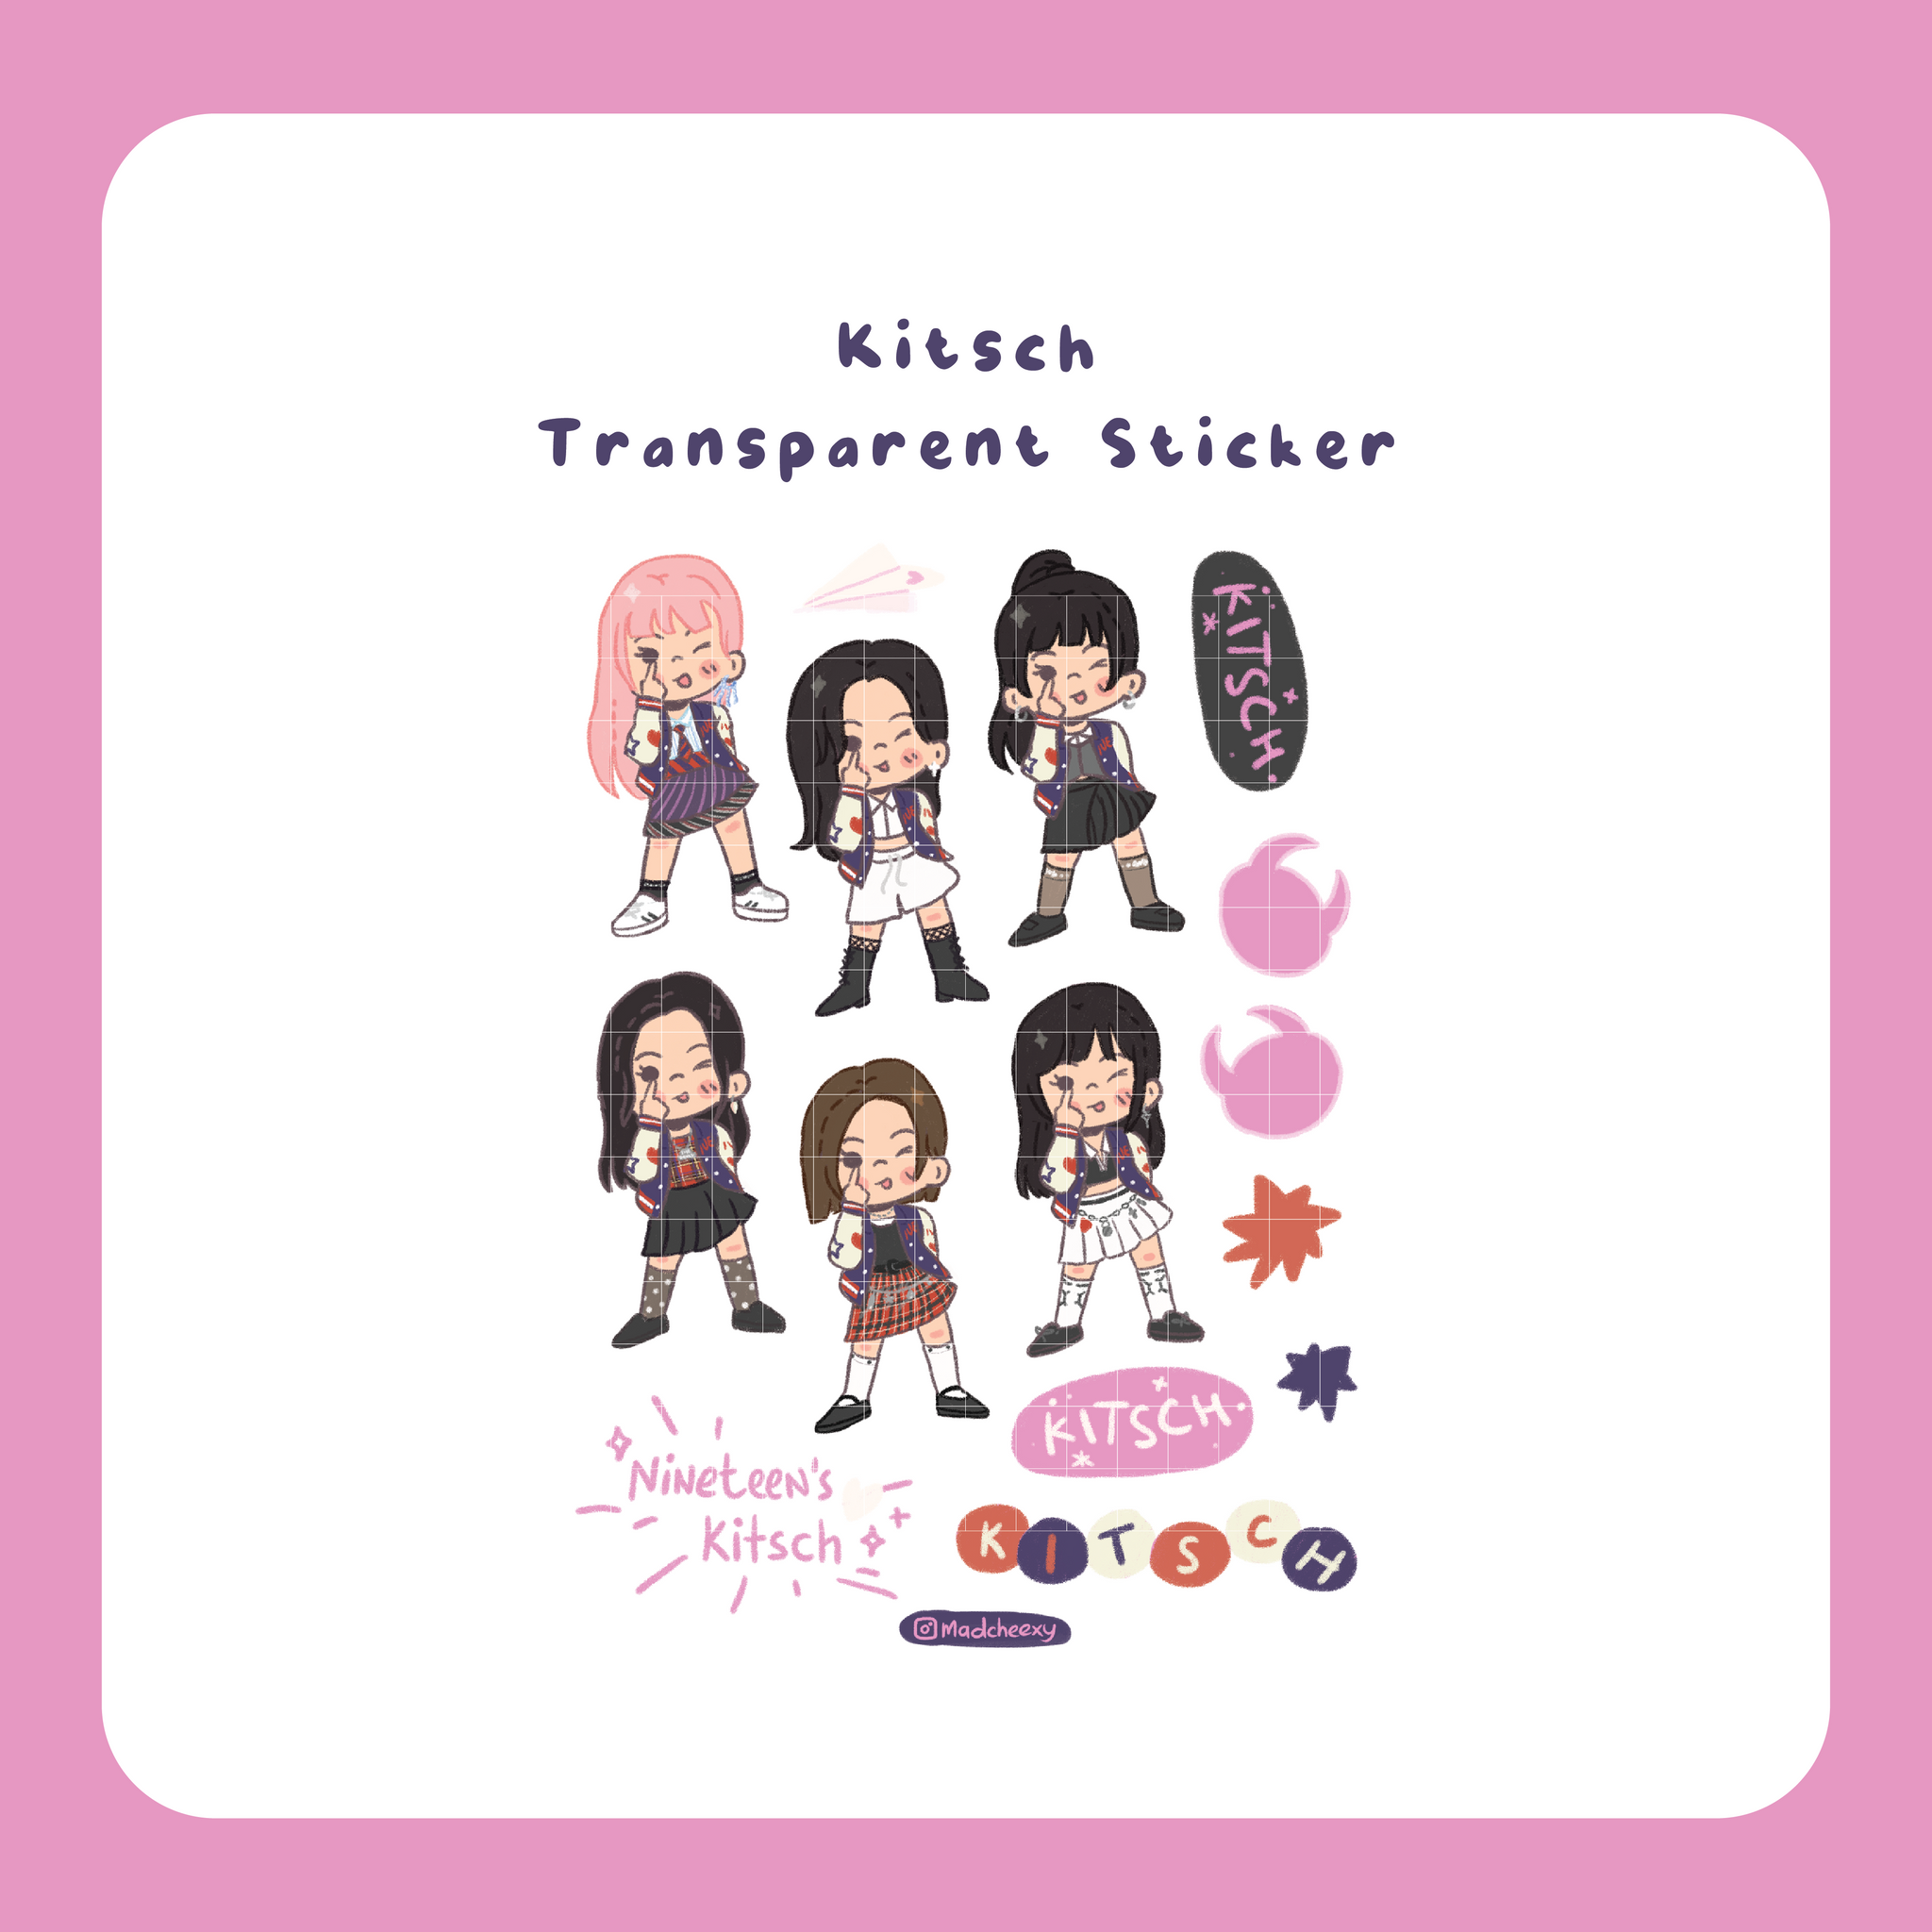 Kitsch Transparent Sticker